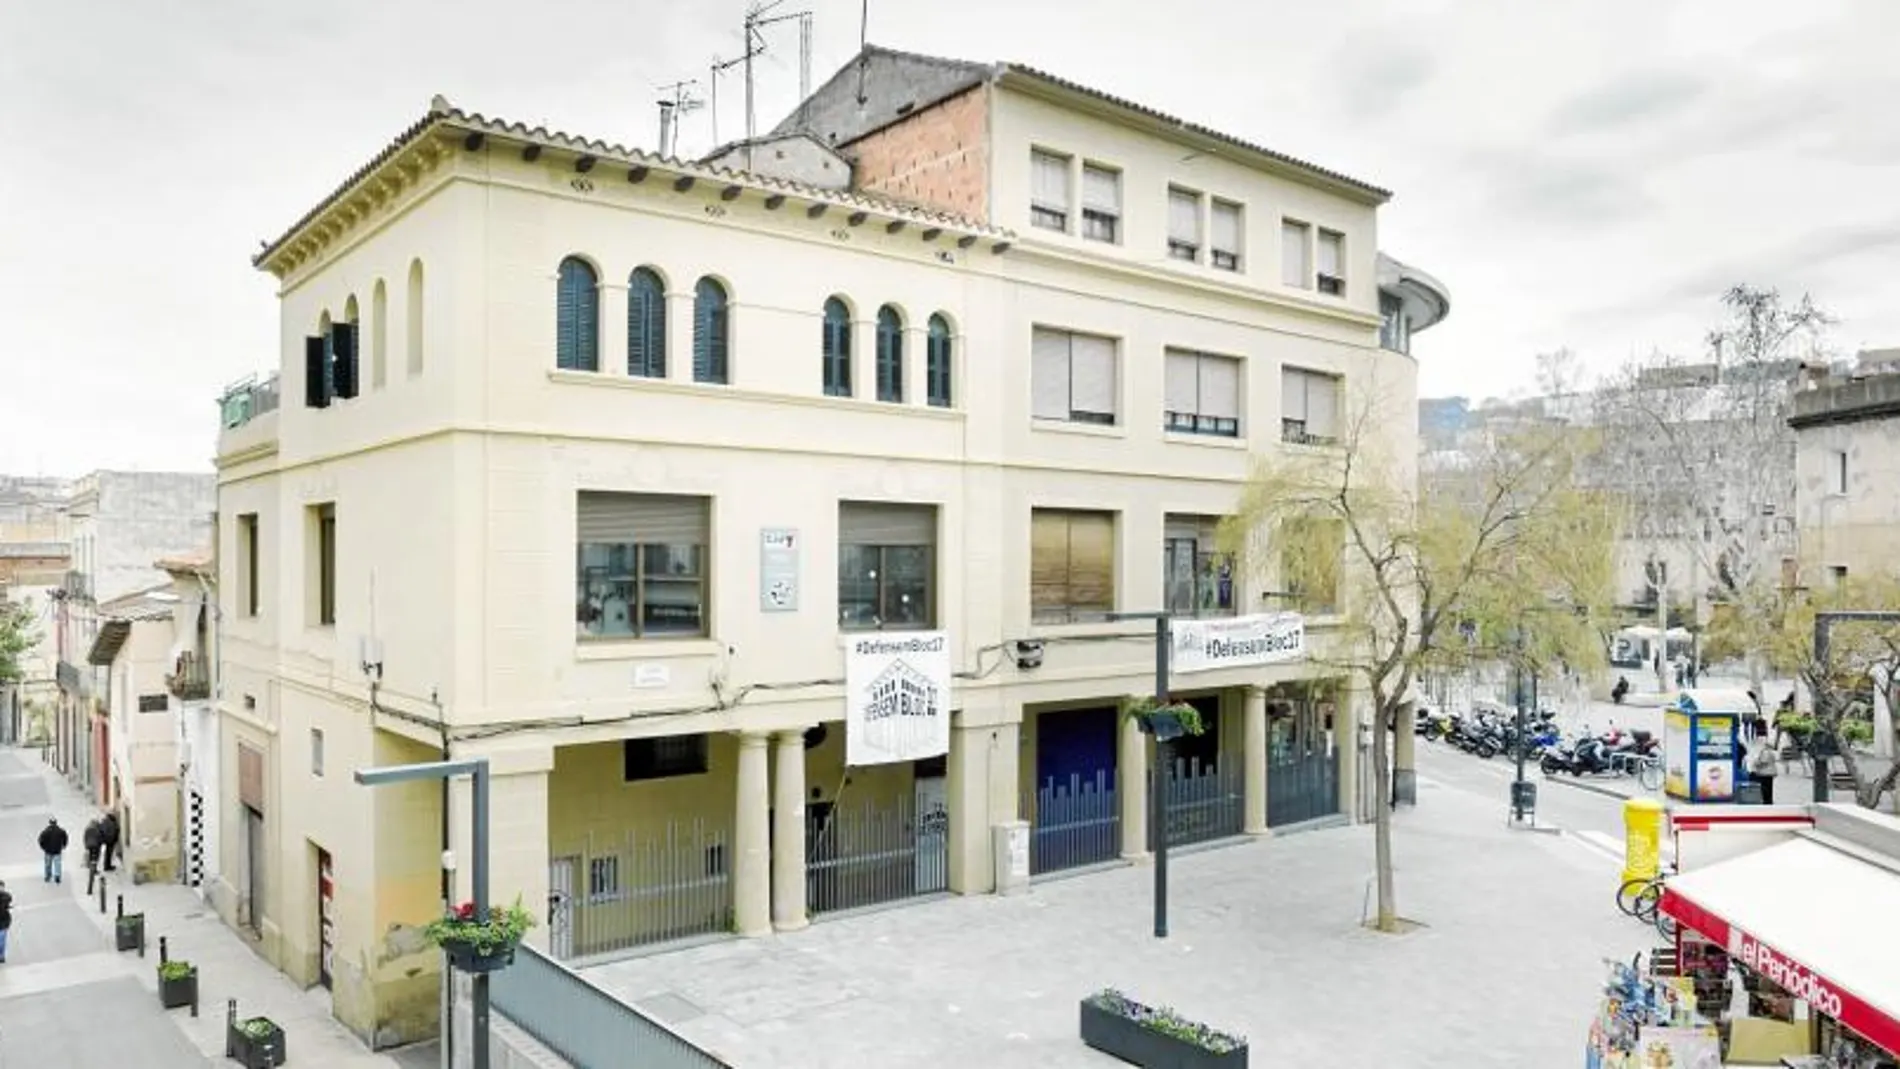 El edificio, propiedad de una entidad bancaria, está situado en la plaza Eivissa, y desde hace 30 años está gestionado por los movimientos juveniles del barrio